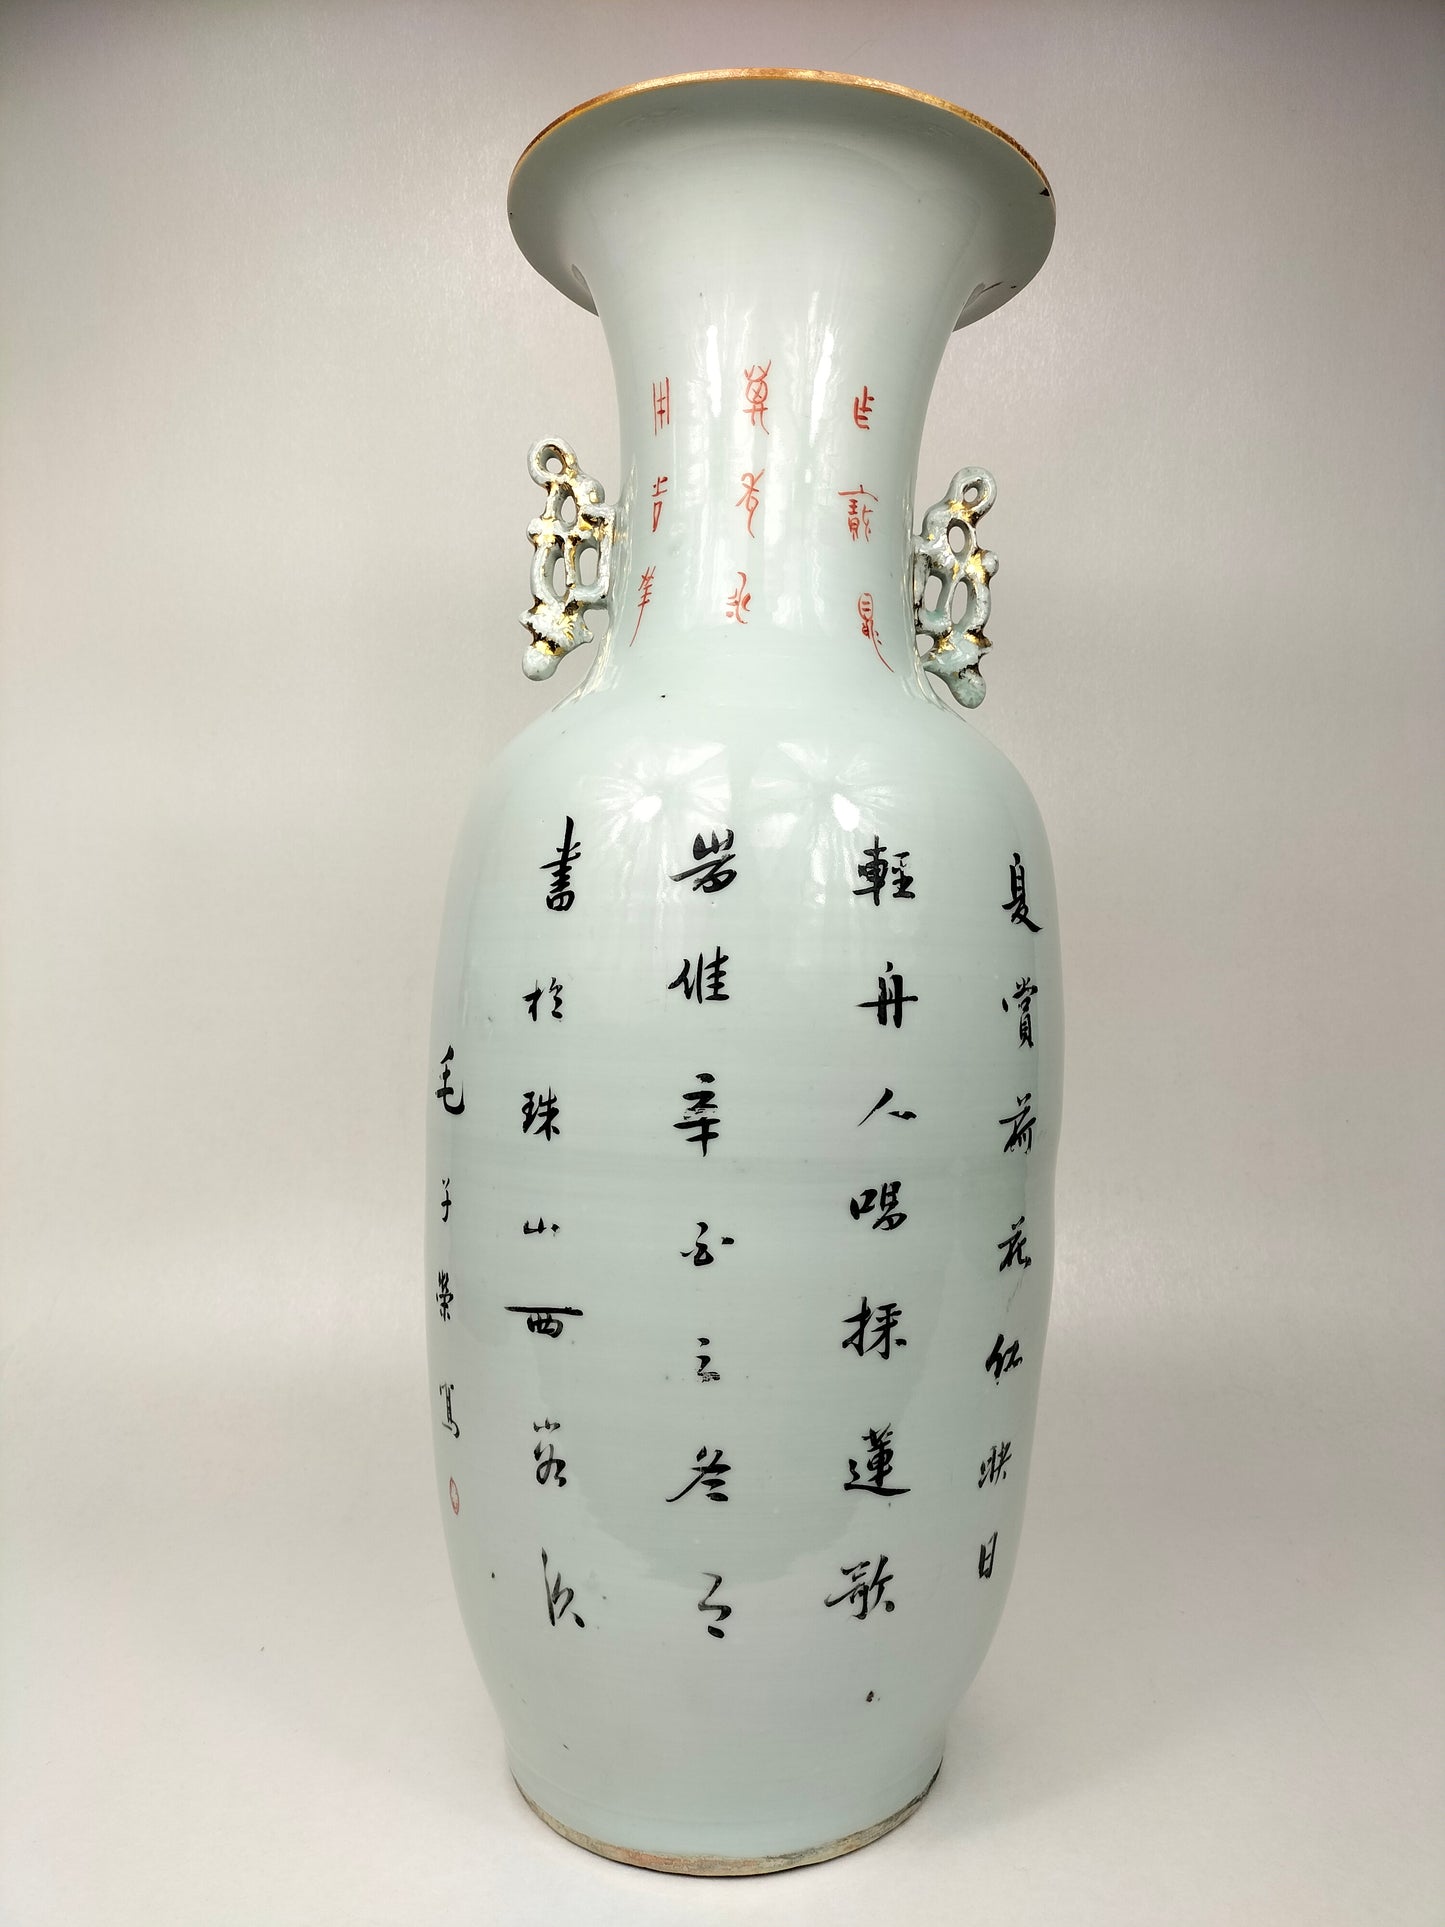 مزهرية صينية أثرية كبيرة مزينة بمنظر إمبراطوري // فترة الجمهورية (1912-1949)